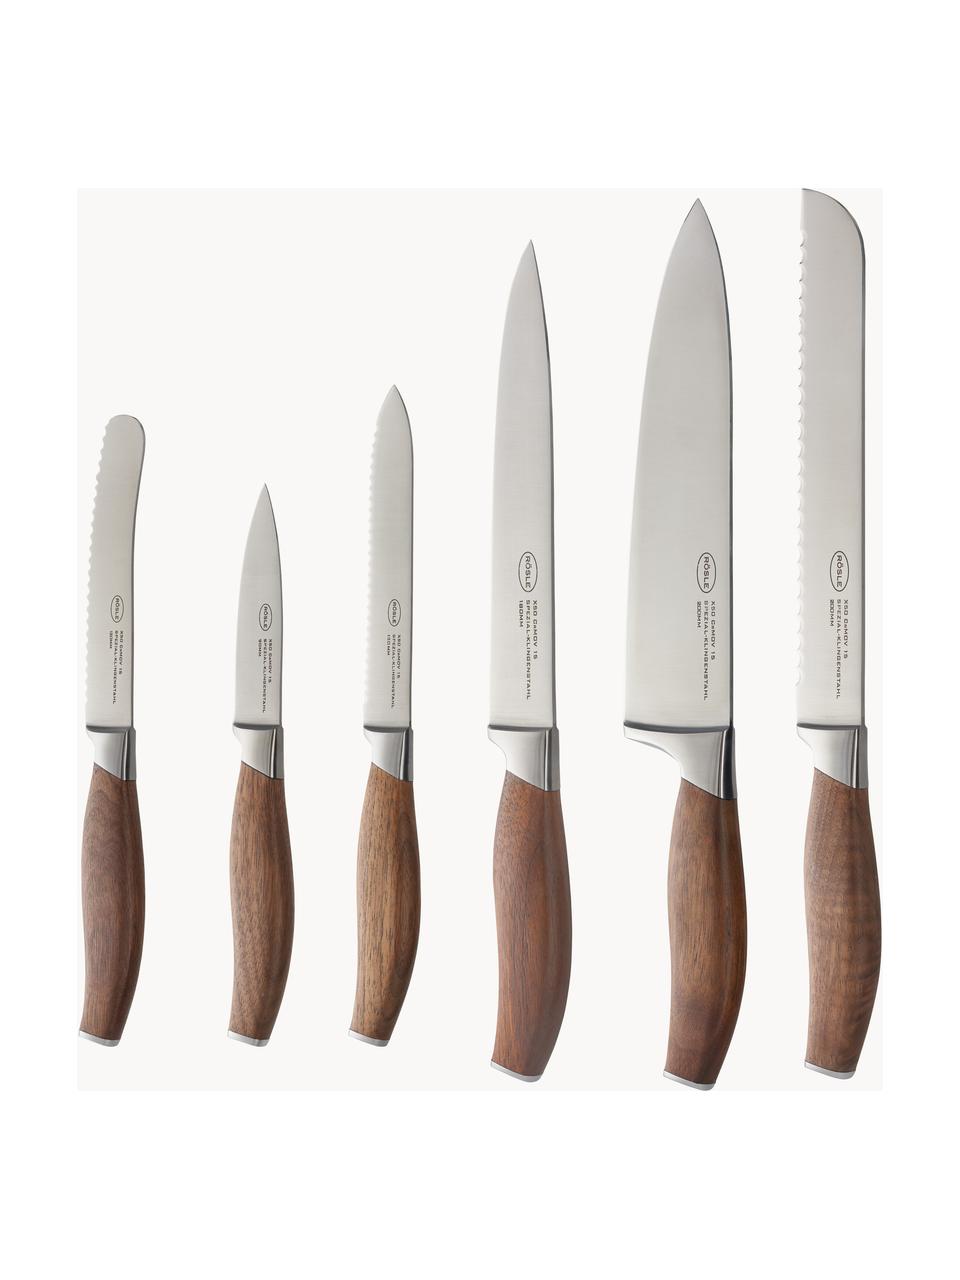 Messerblock Passion mit 6 Messern, Messer: rostfreier Stahl X50CrMOV, Griff: Walnussholz, Silberfarben, Dunkles Holz, Verschiedene Grössen